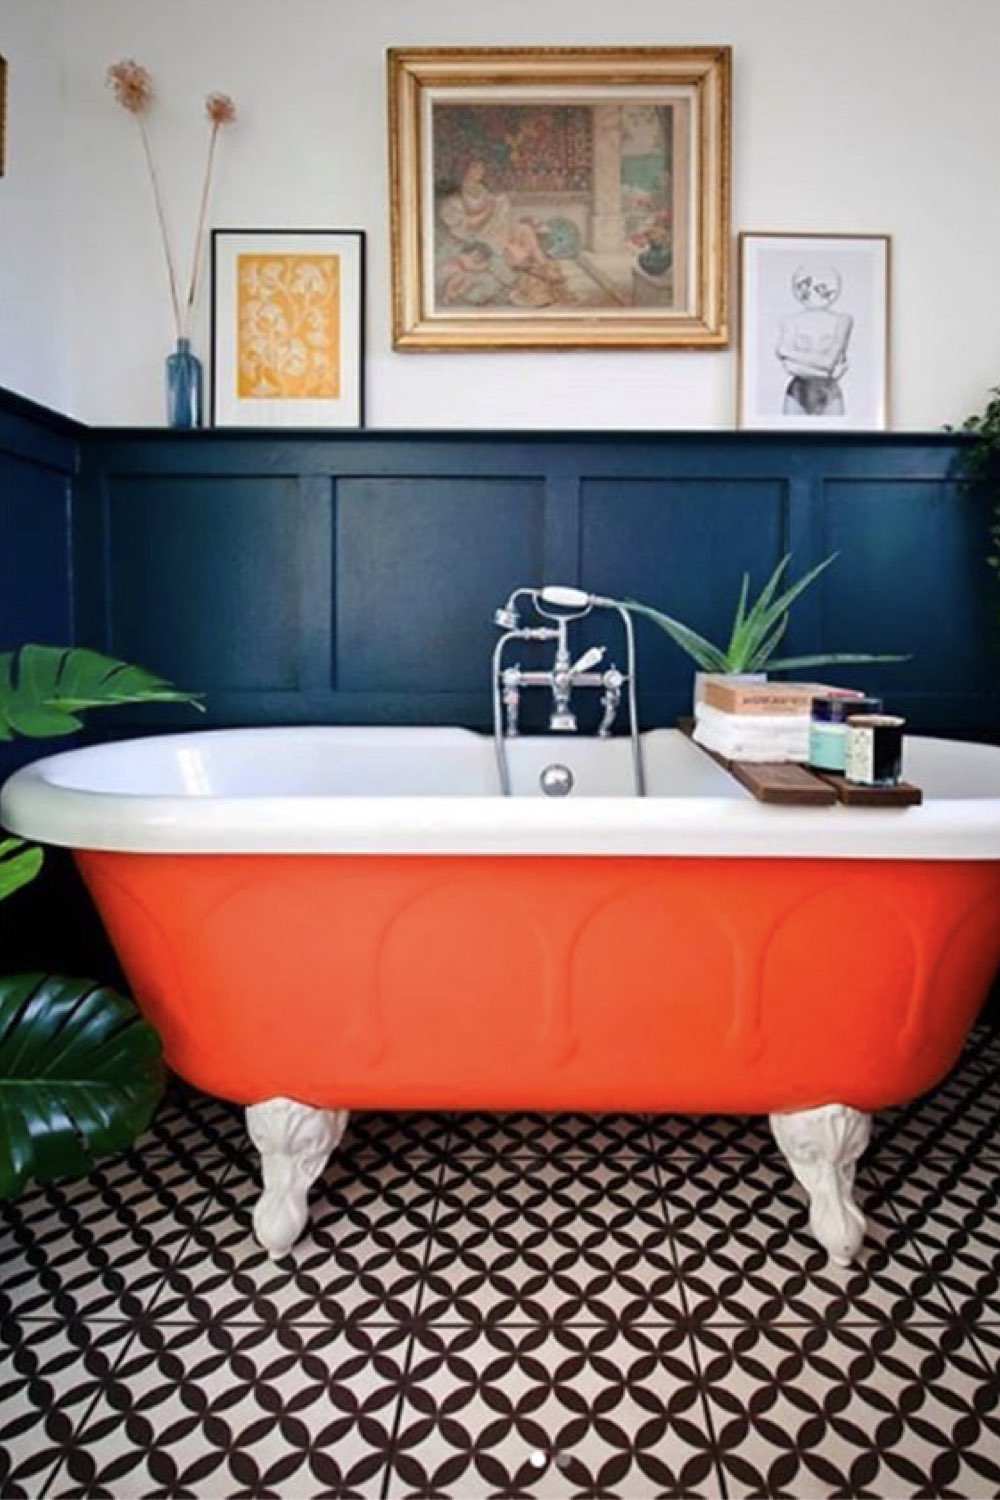 salle de bain decoration reussie exemple soubassement lambris bleu nuit baignoire ancienne sur pied couleur orange contraste chic